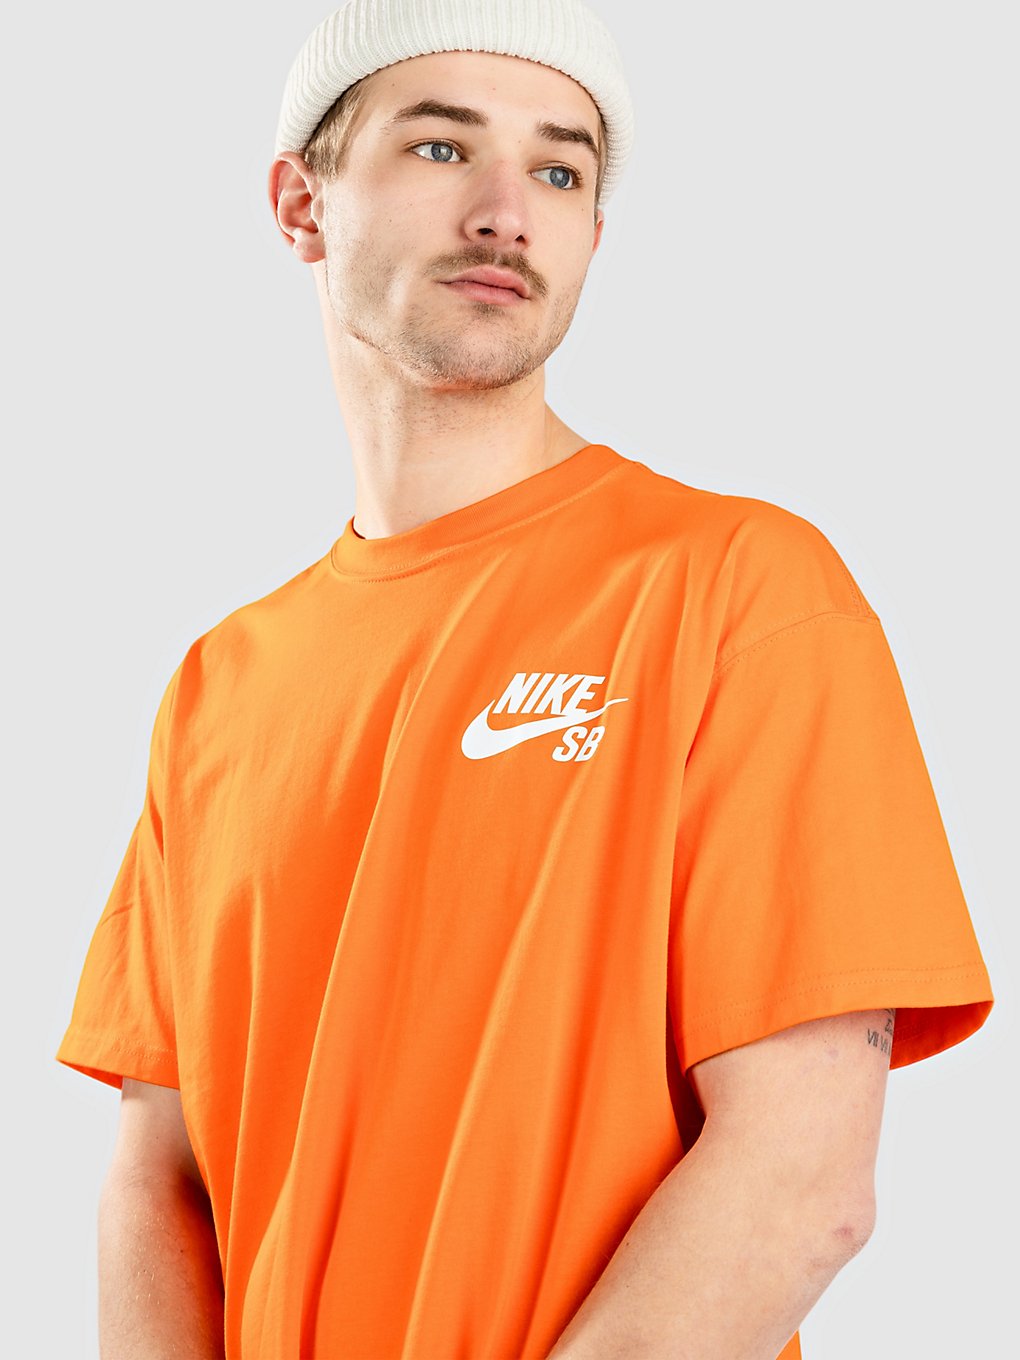 Nike Sb T-Shirt safety orange kaufen